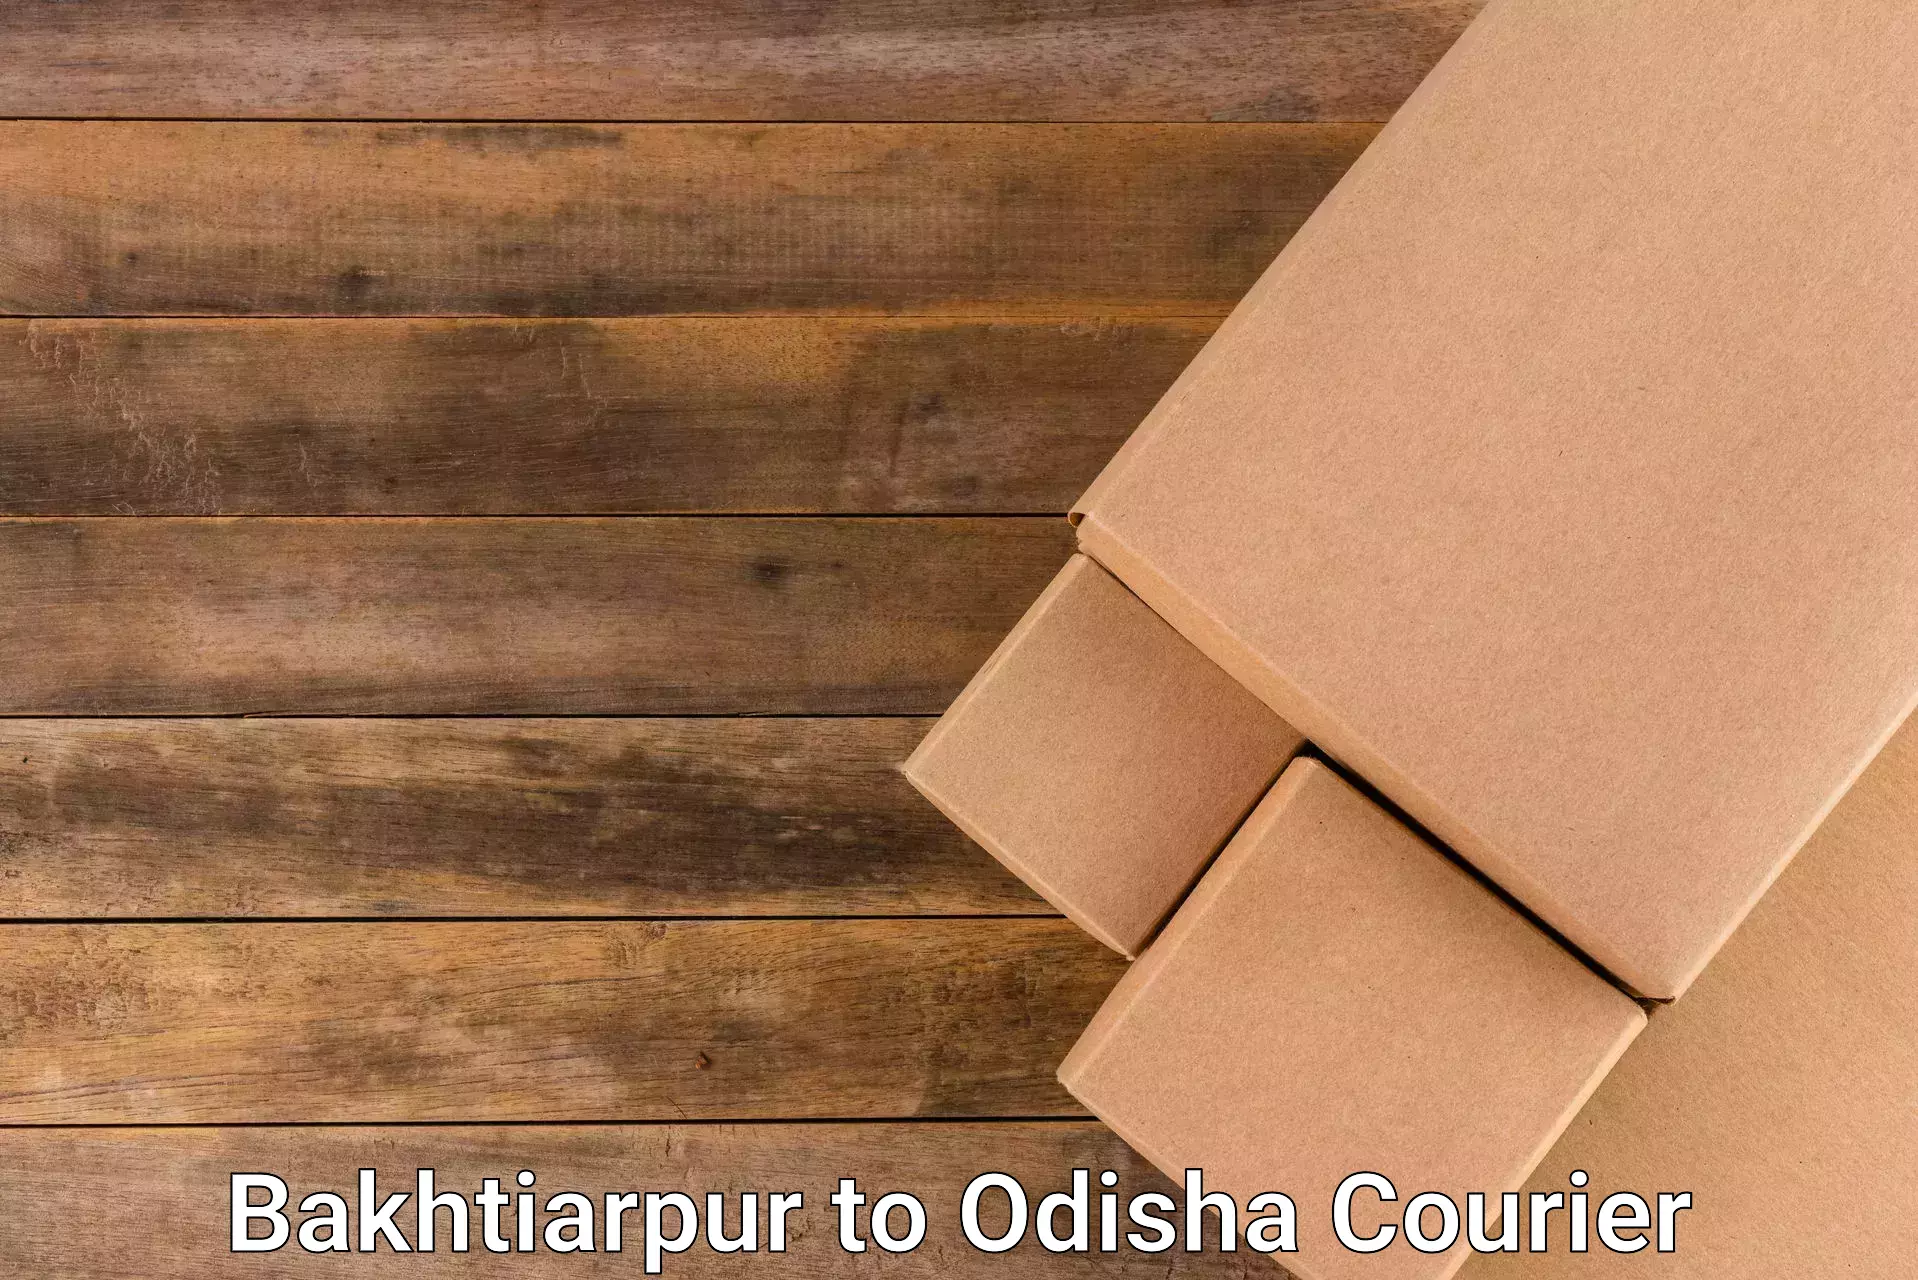 Full-service courier options Bakhtiarpur to Konark